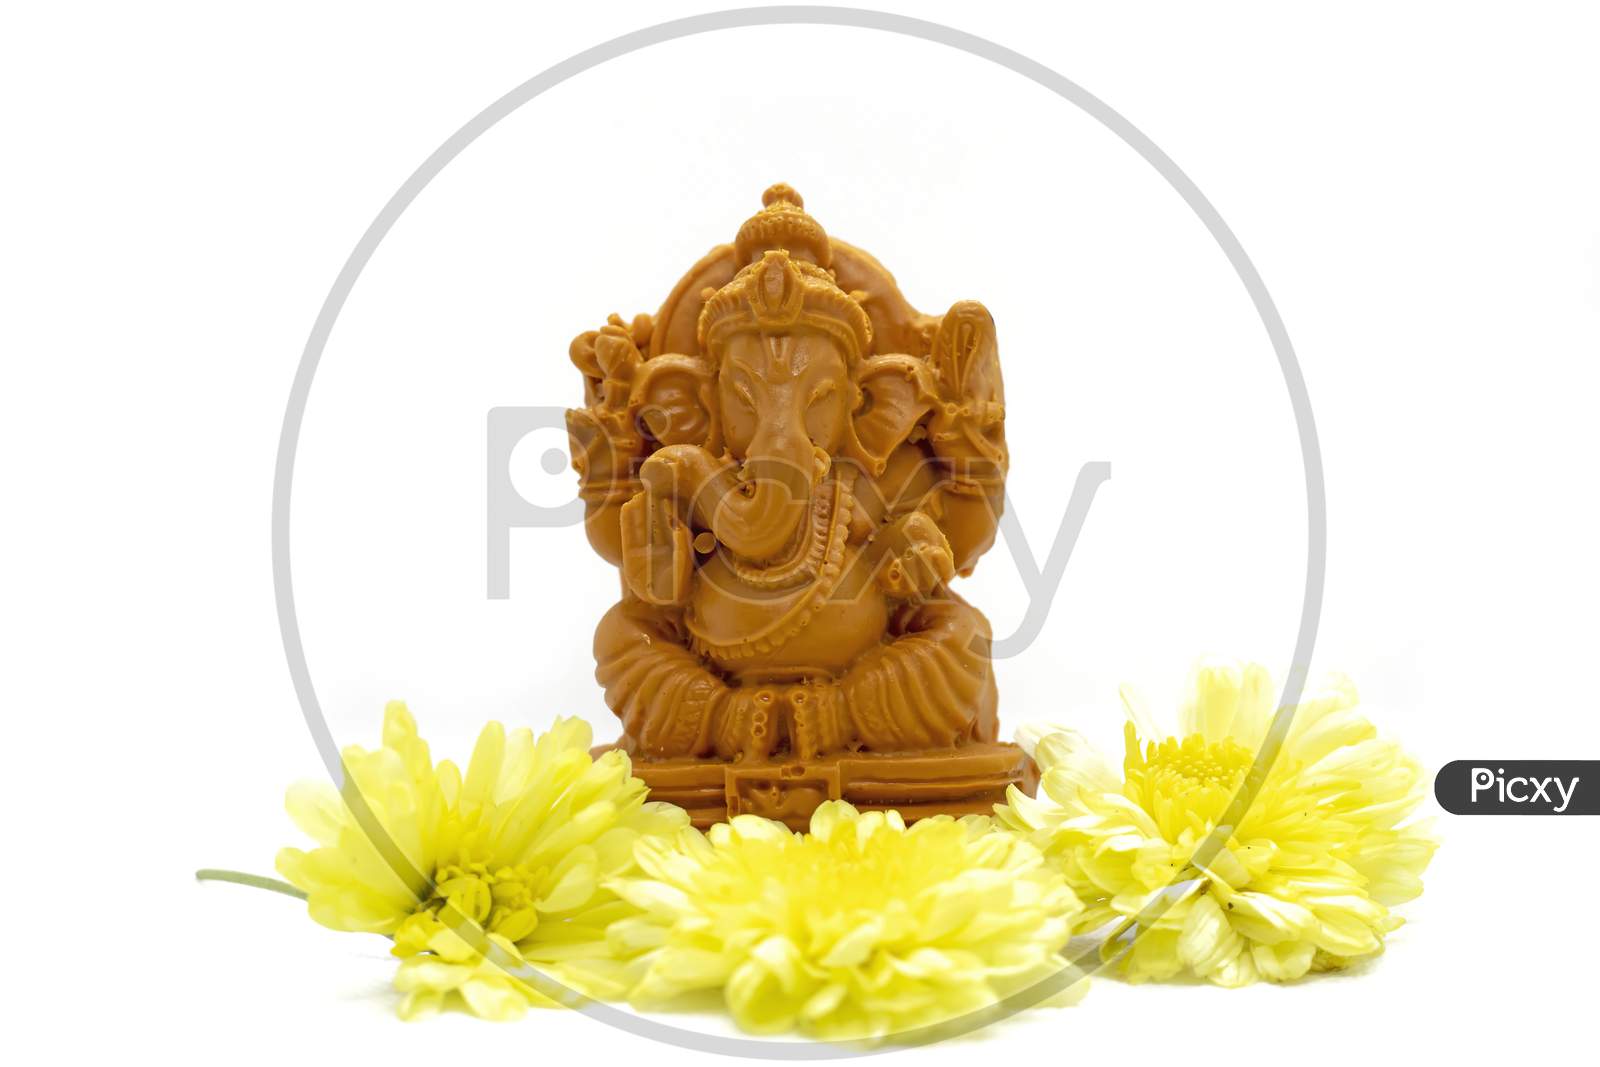 Ganesha Statue Of Hindu God With Flowers On White Background.